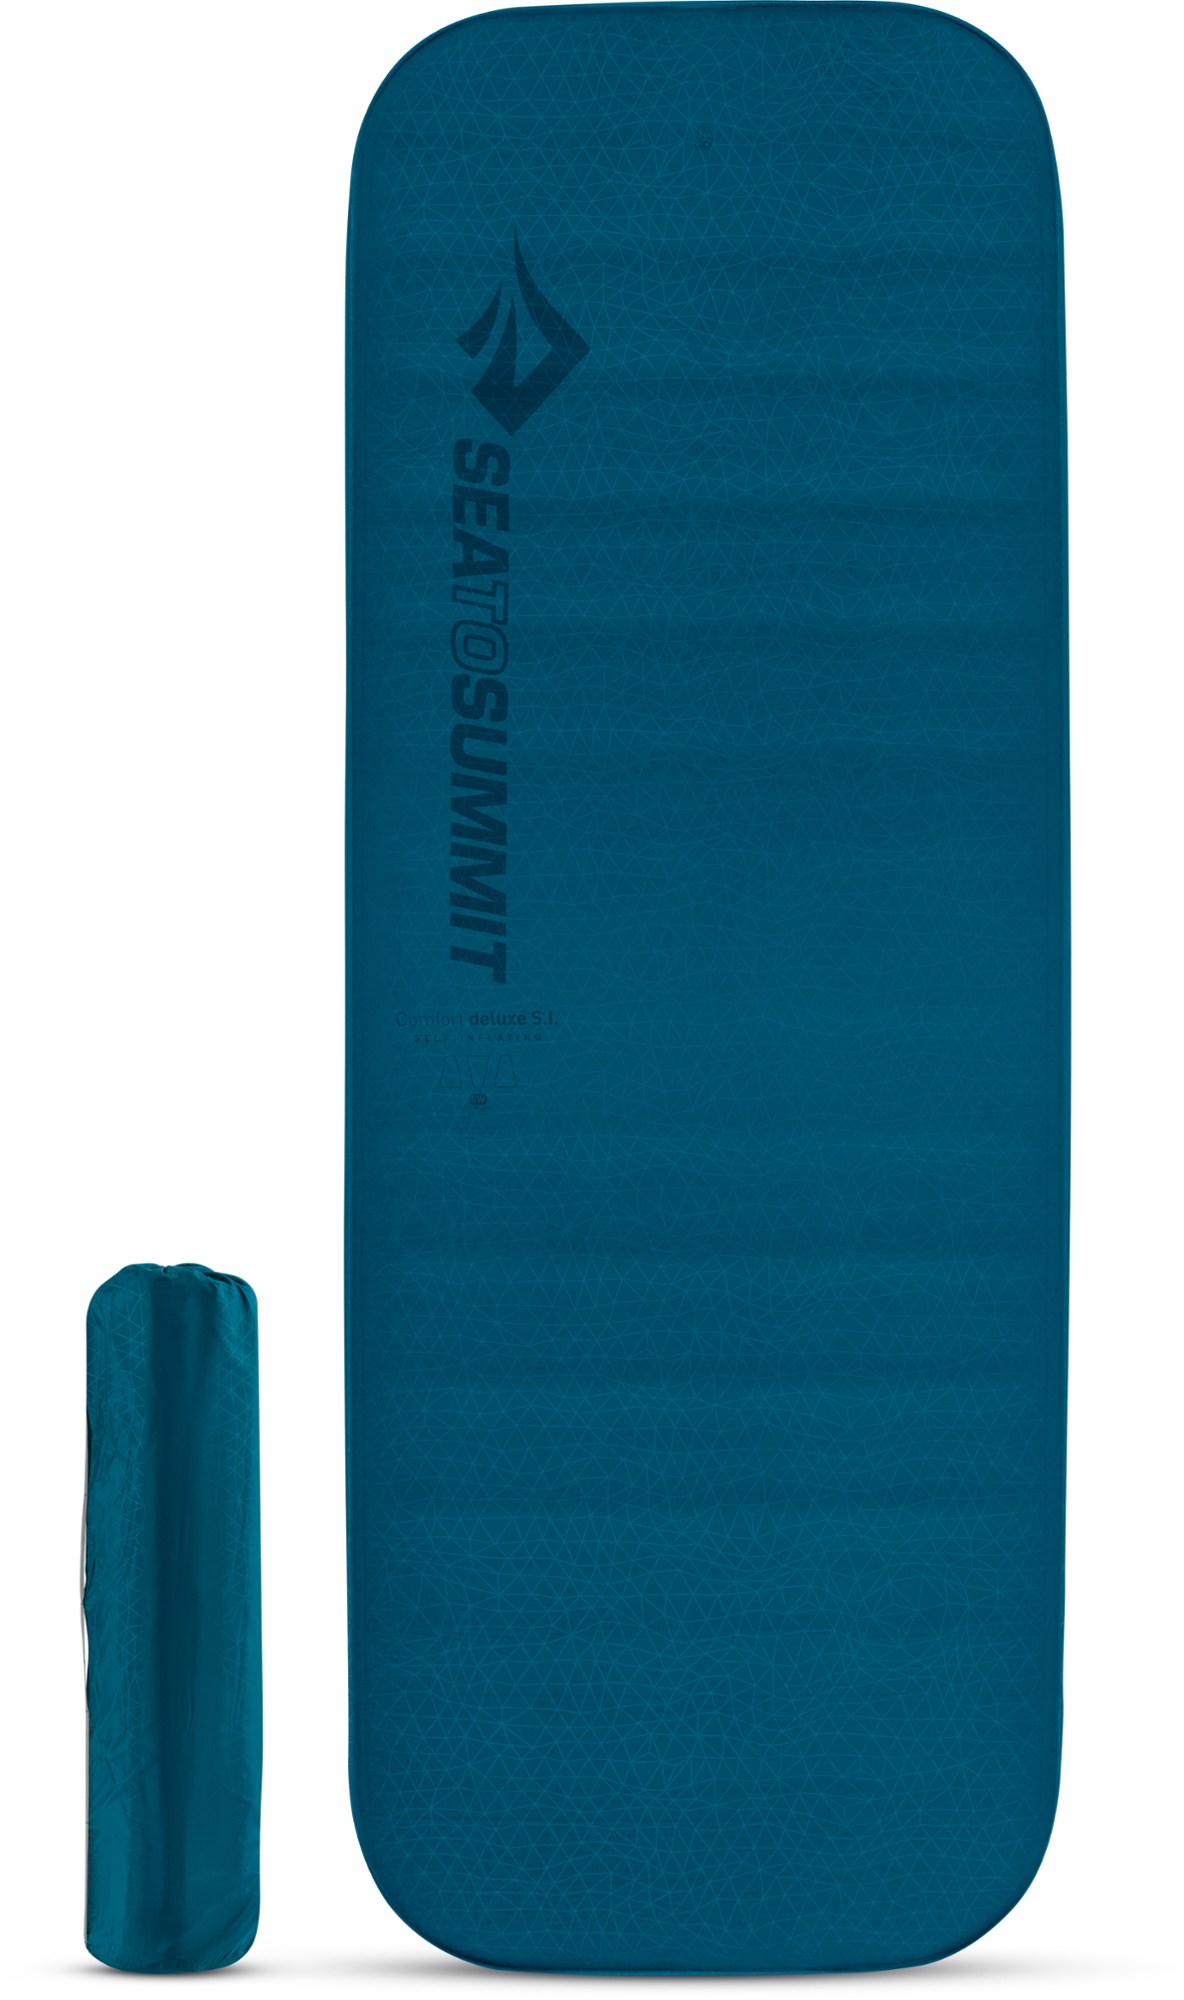 Самонадувающийся спальный коврик Comfort Deluxe Sea to Summit, синий коврик самонадувающийся salewa mat comfort applegreen grey